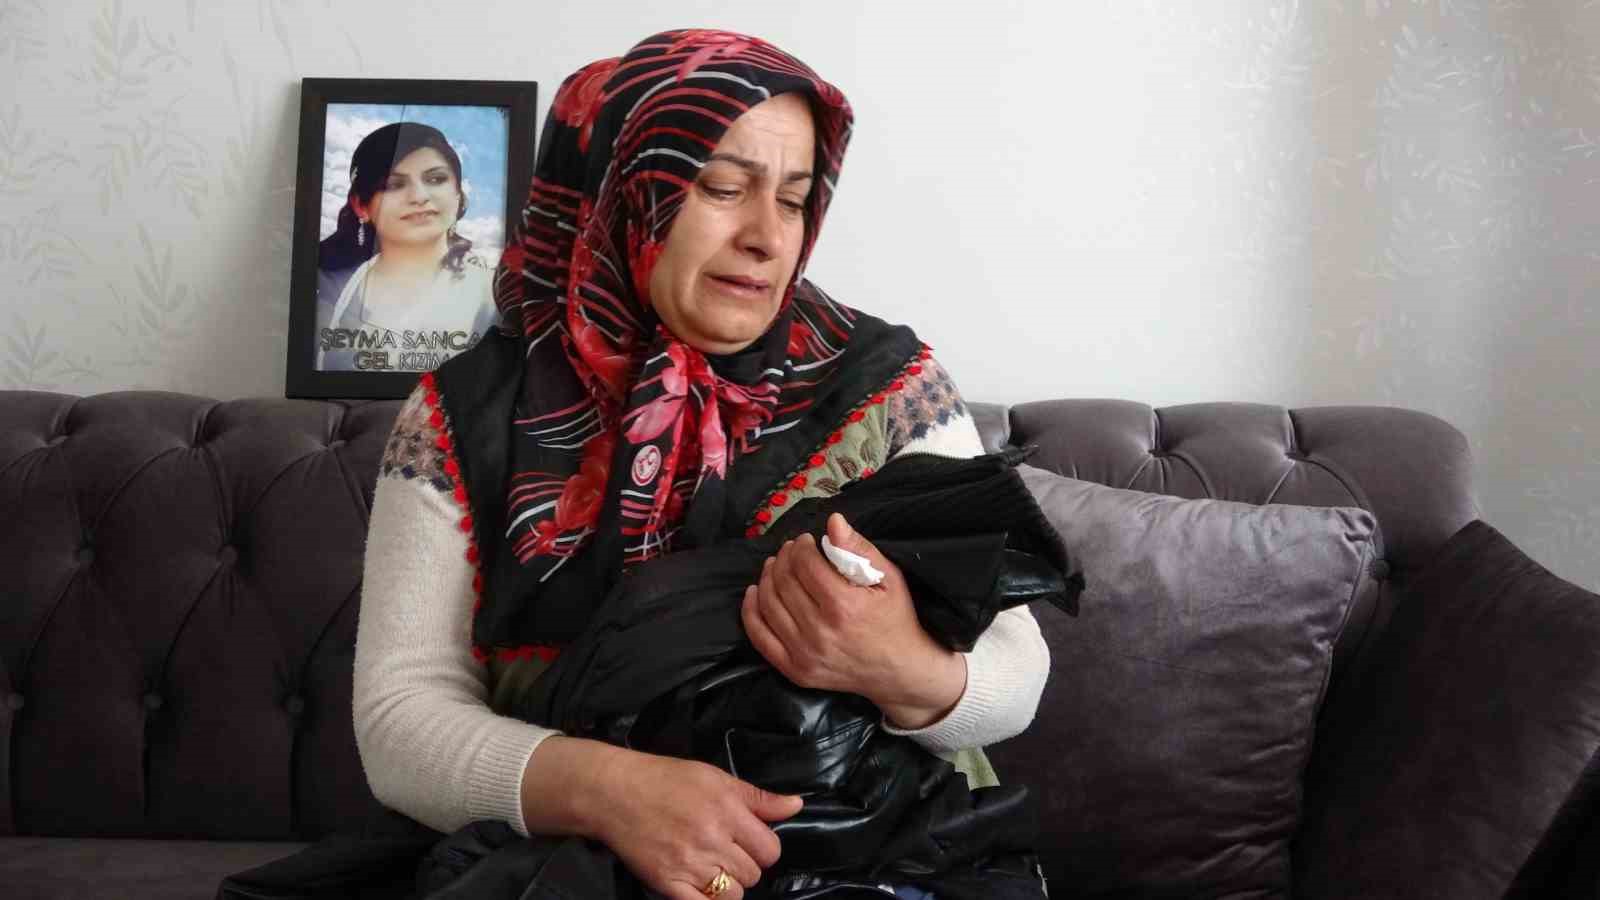 PKK tarafından kaçırılan kızının kıyafetine sarılarak ‘Anneler Günü’nü kutladı